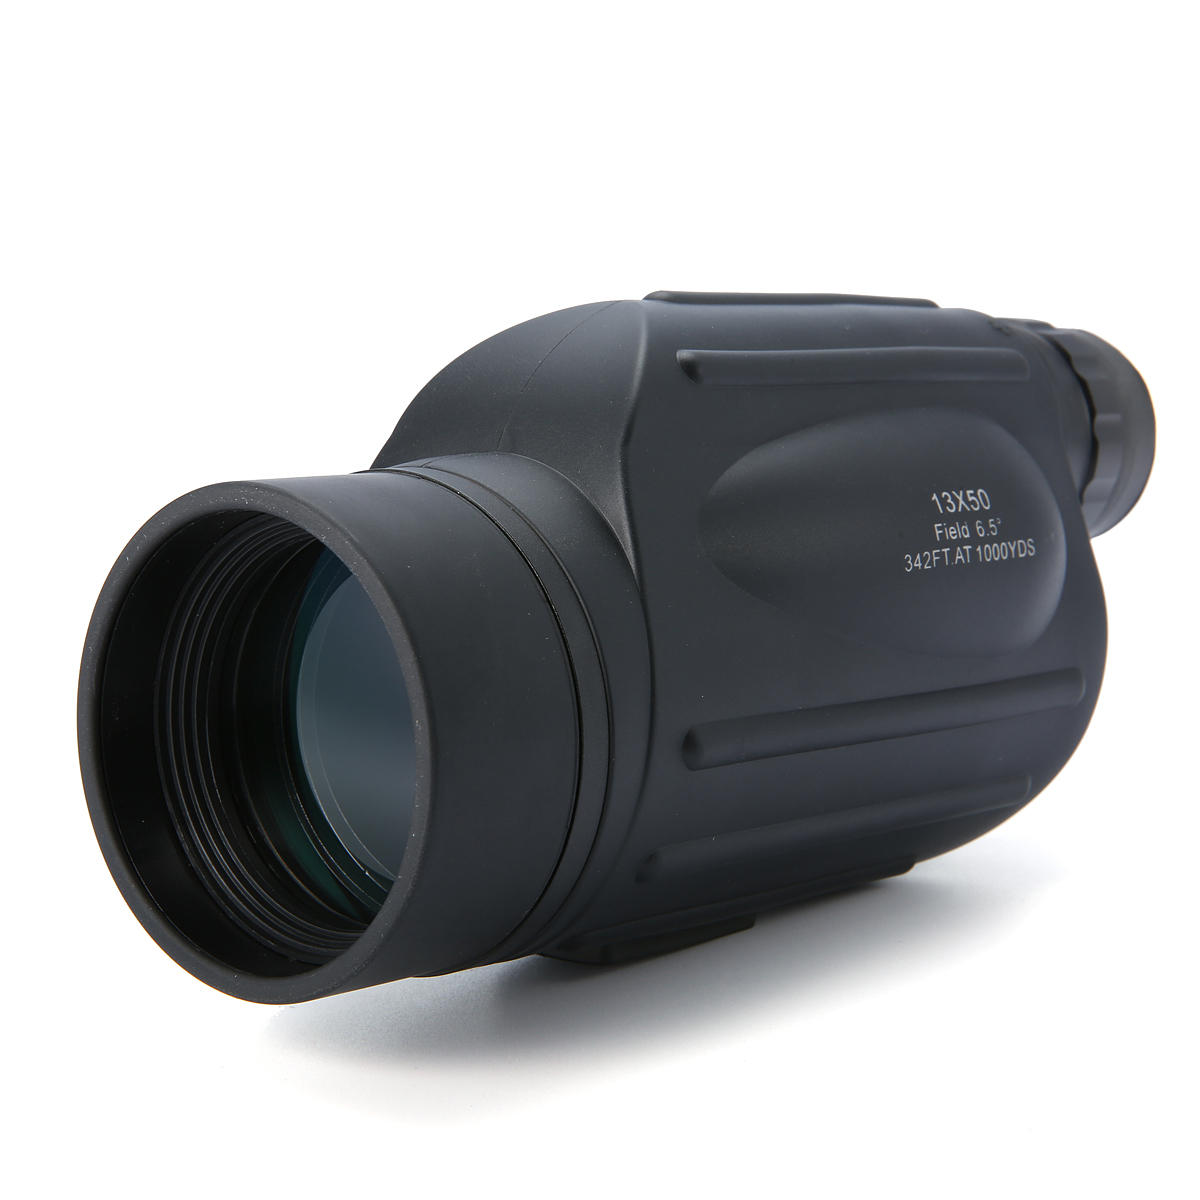 13x50 Handheld Monocular Scope Waterproof Fogproof Focus Telescope for Outdoor Sports Bird Watching